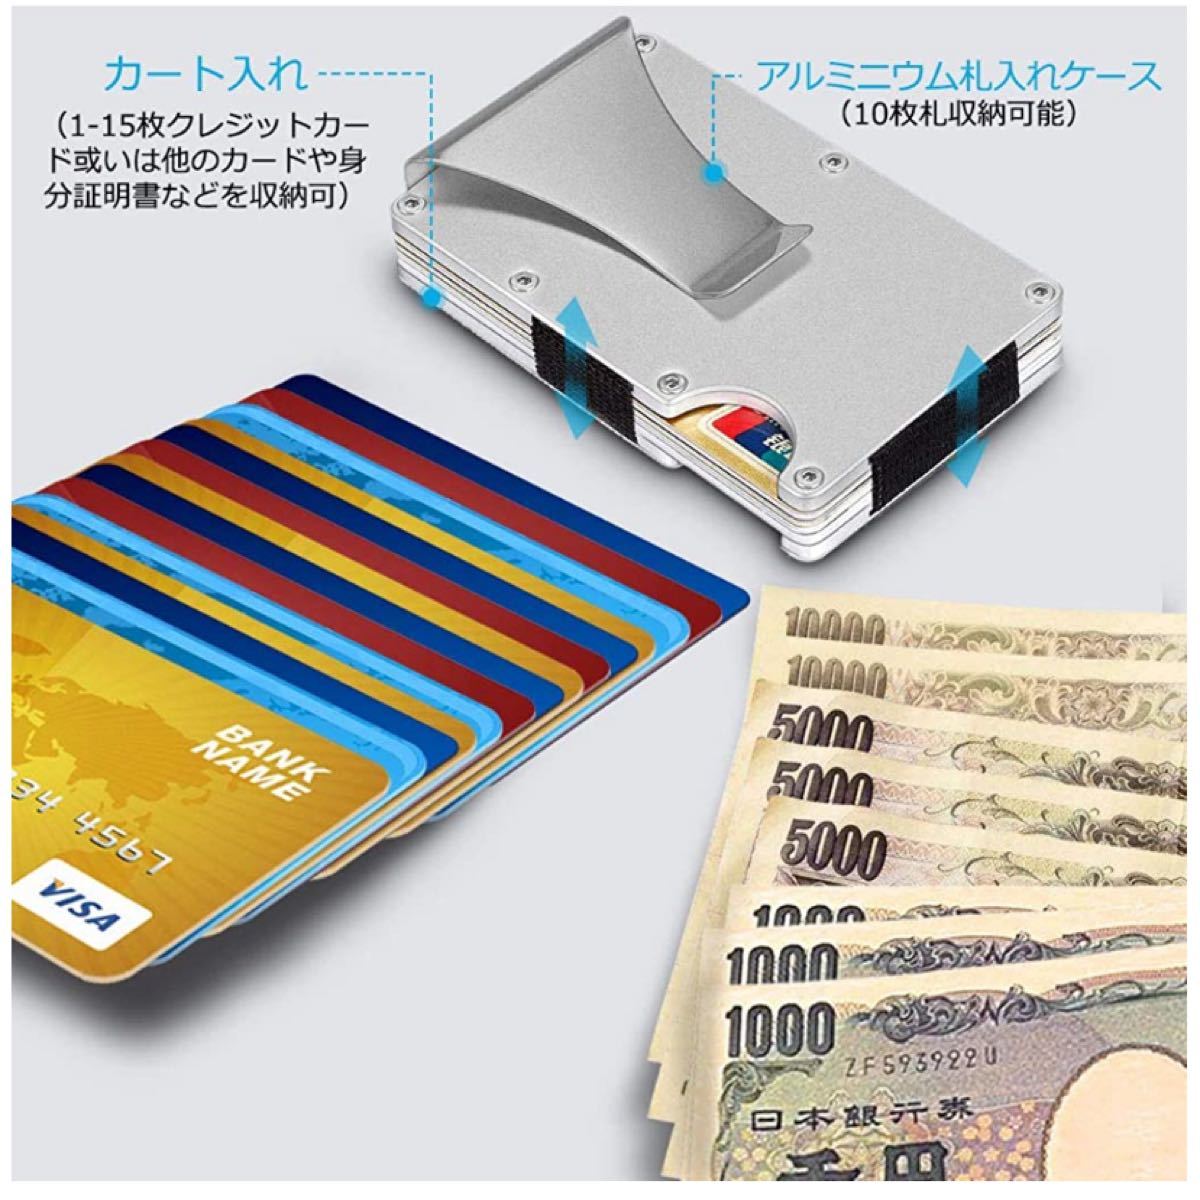 マネークリップ クレジットカードケース 磁気防止